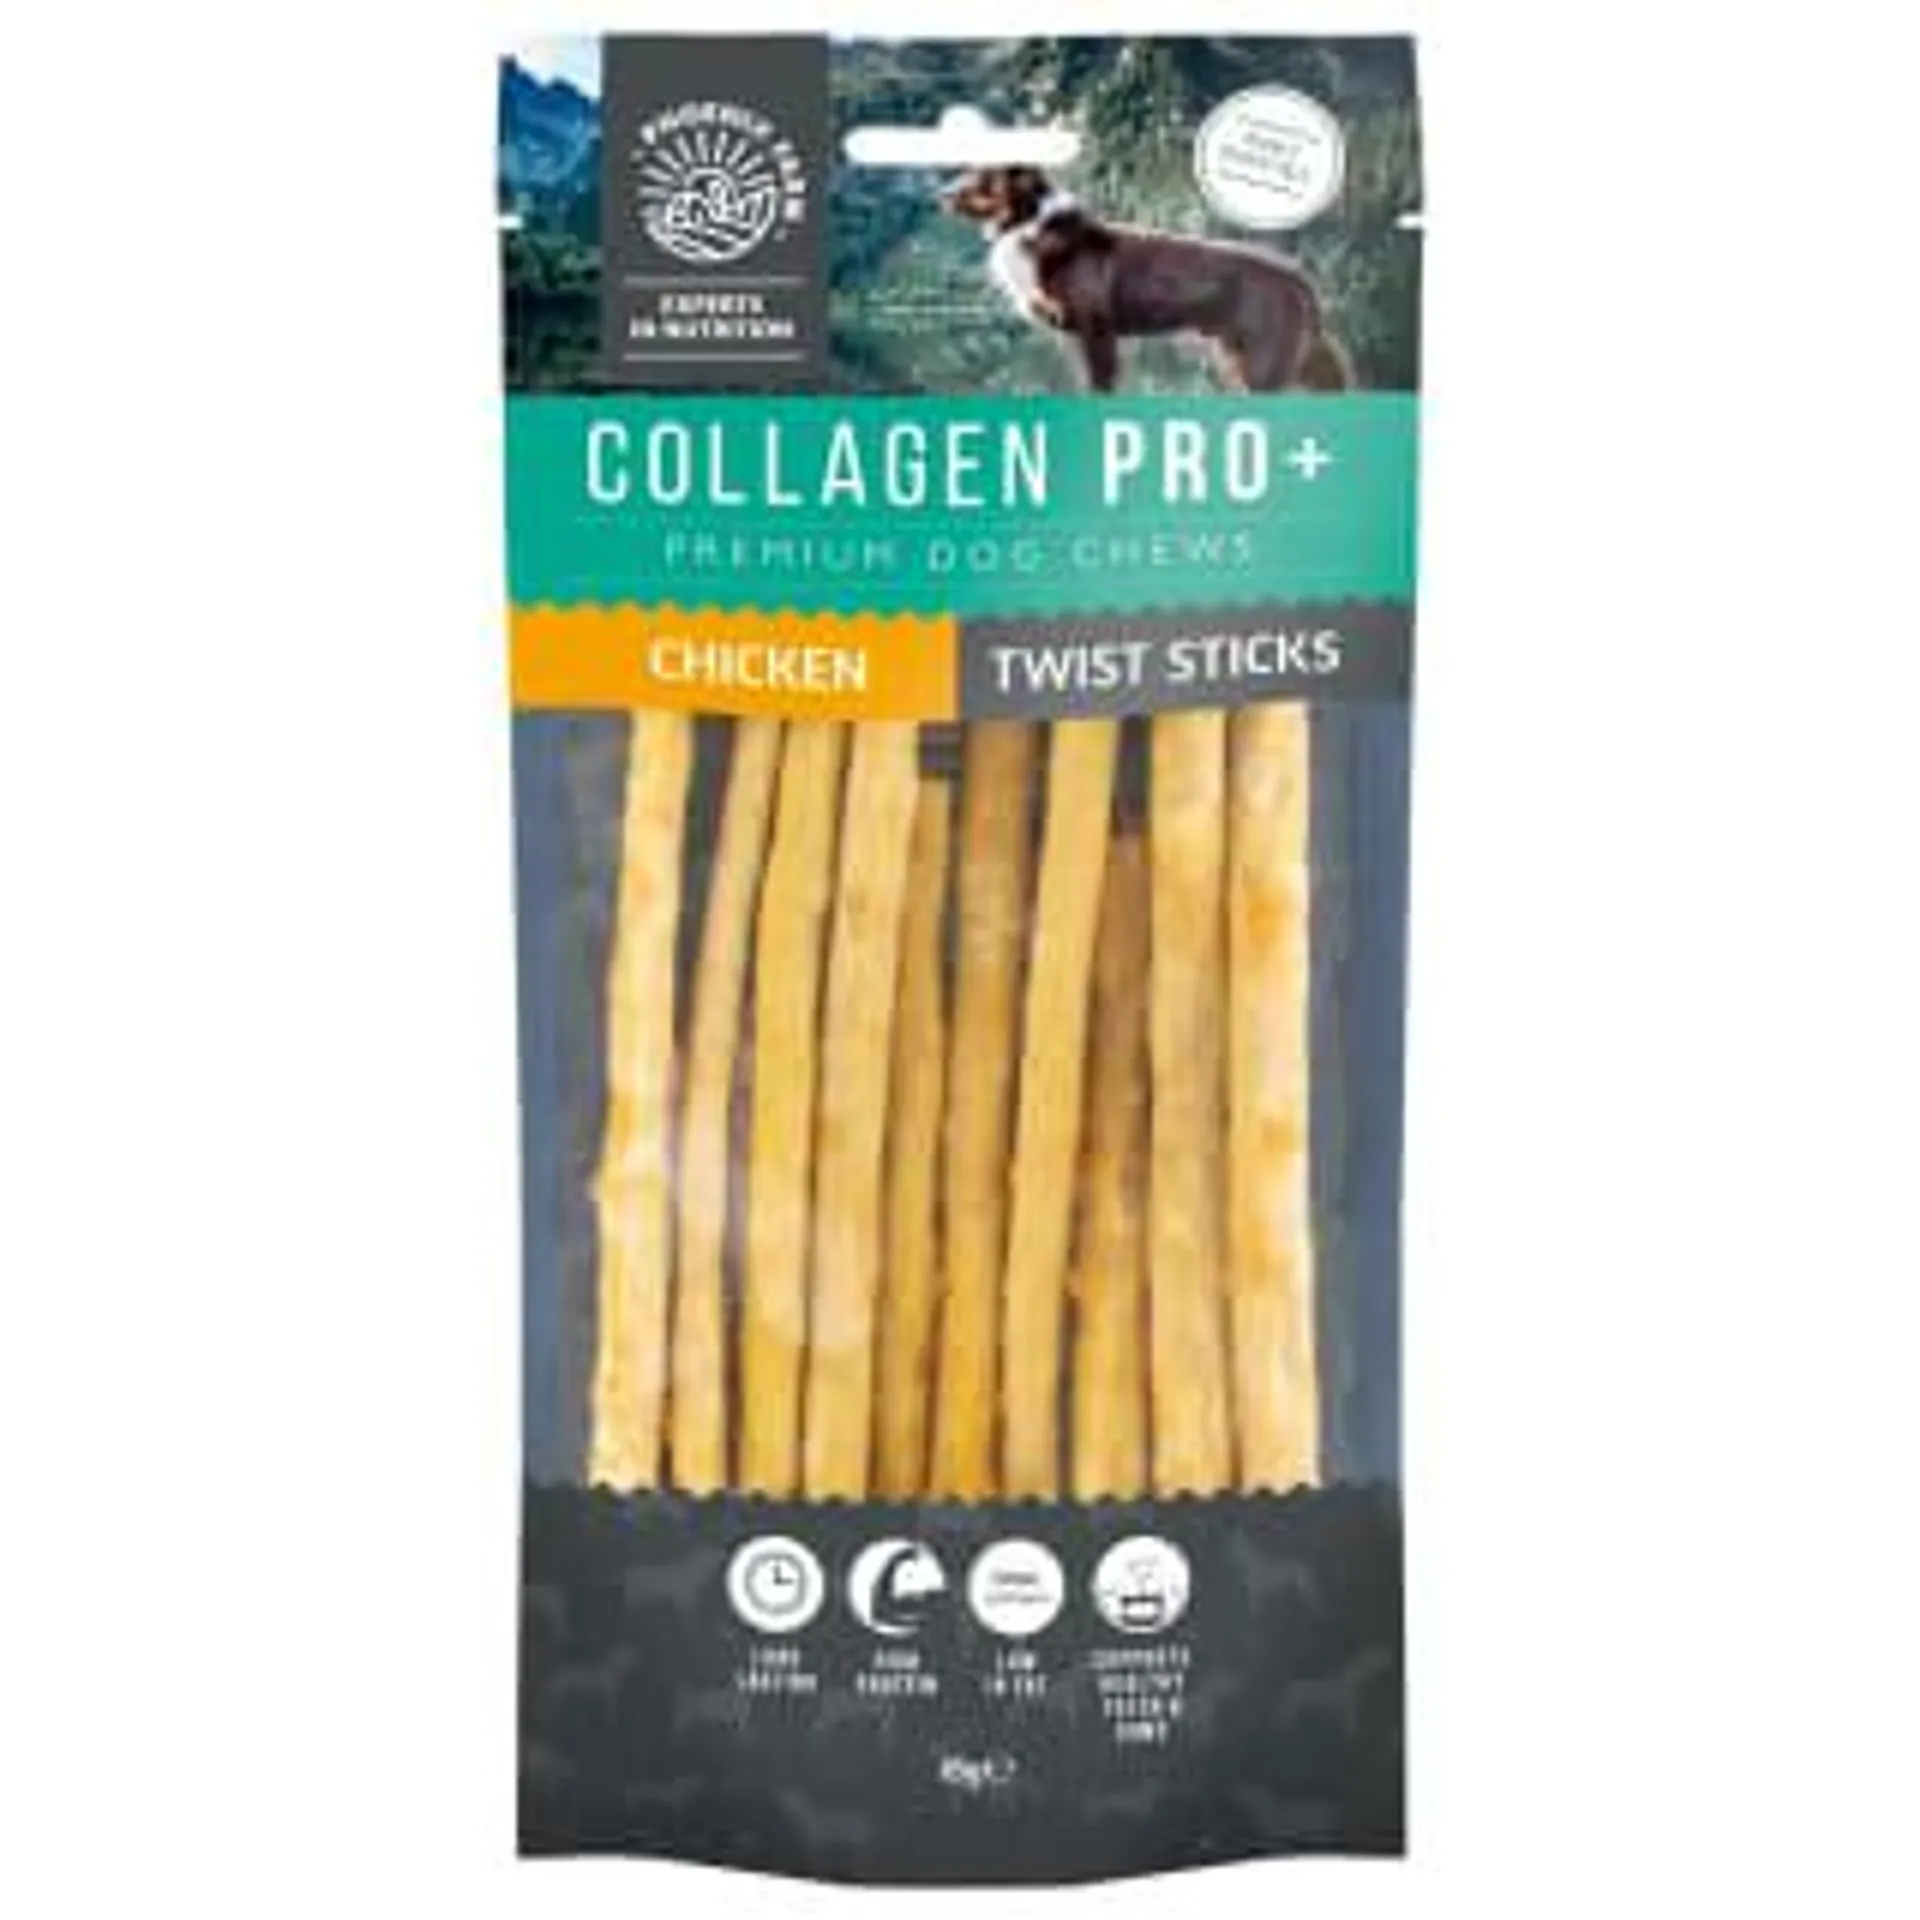 Collagen Pro+ Dog Chews 10pk - Chicken Twist Sticks